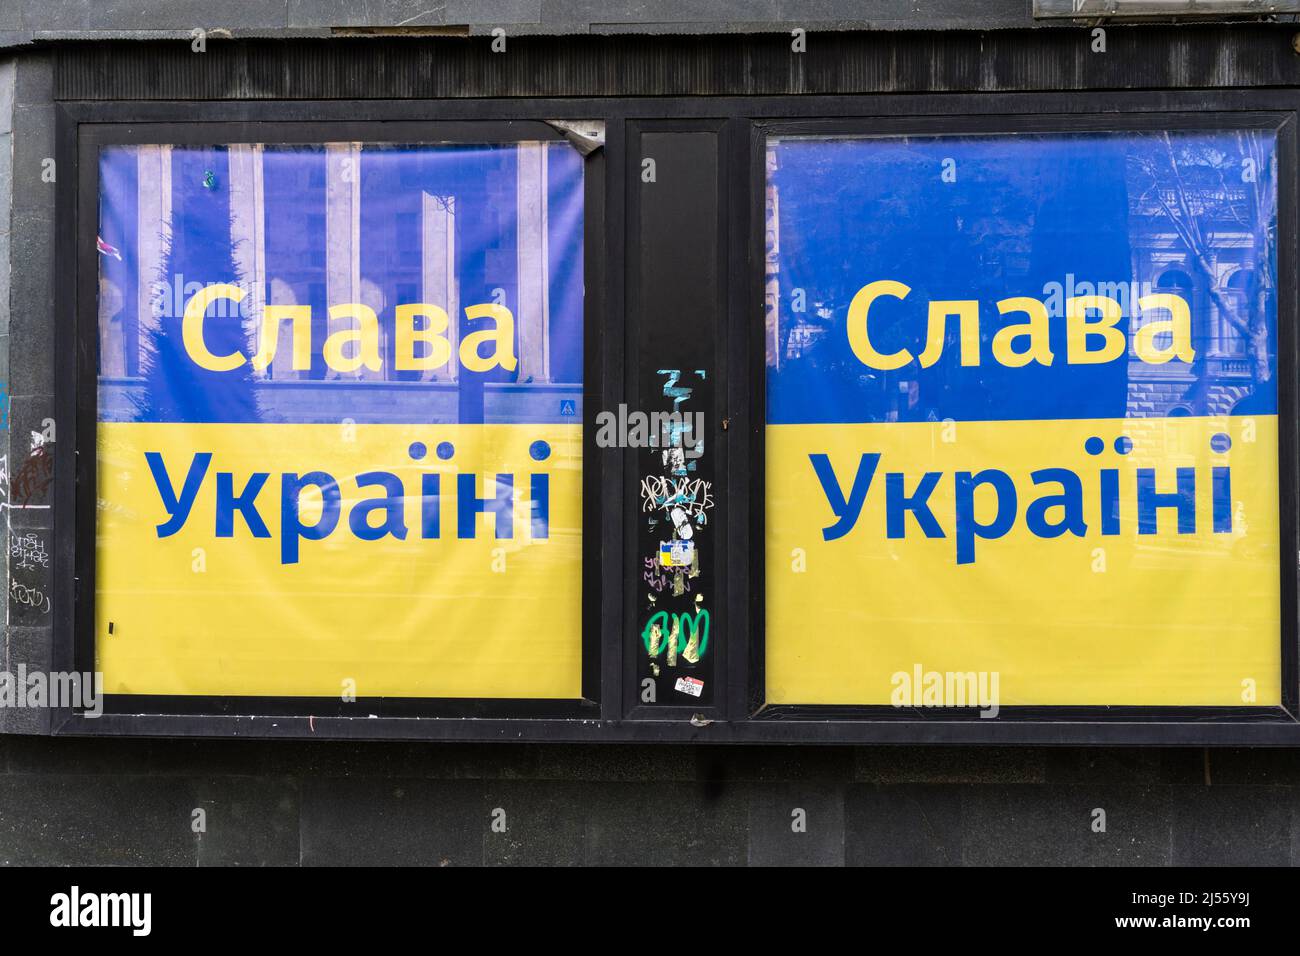 Manifesto di solidarietà con l'Ucraina, Tbilisi aprile 2022. La guerra in Ucraina ha suscitato un'enorme ondata di solidarietà in Georgia. Foto Stock